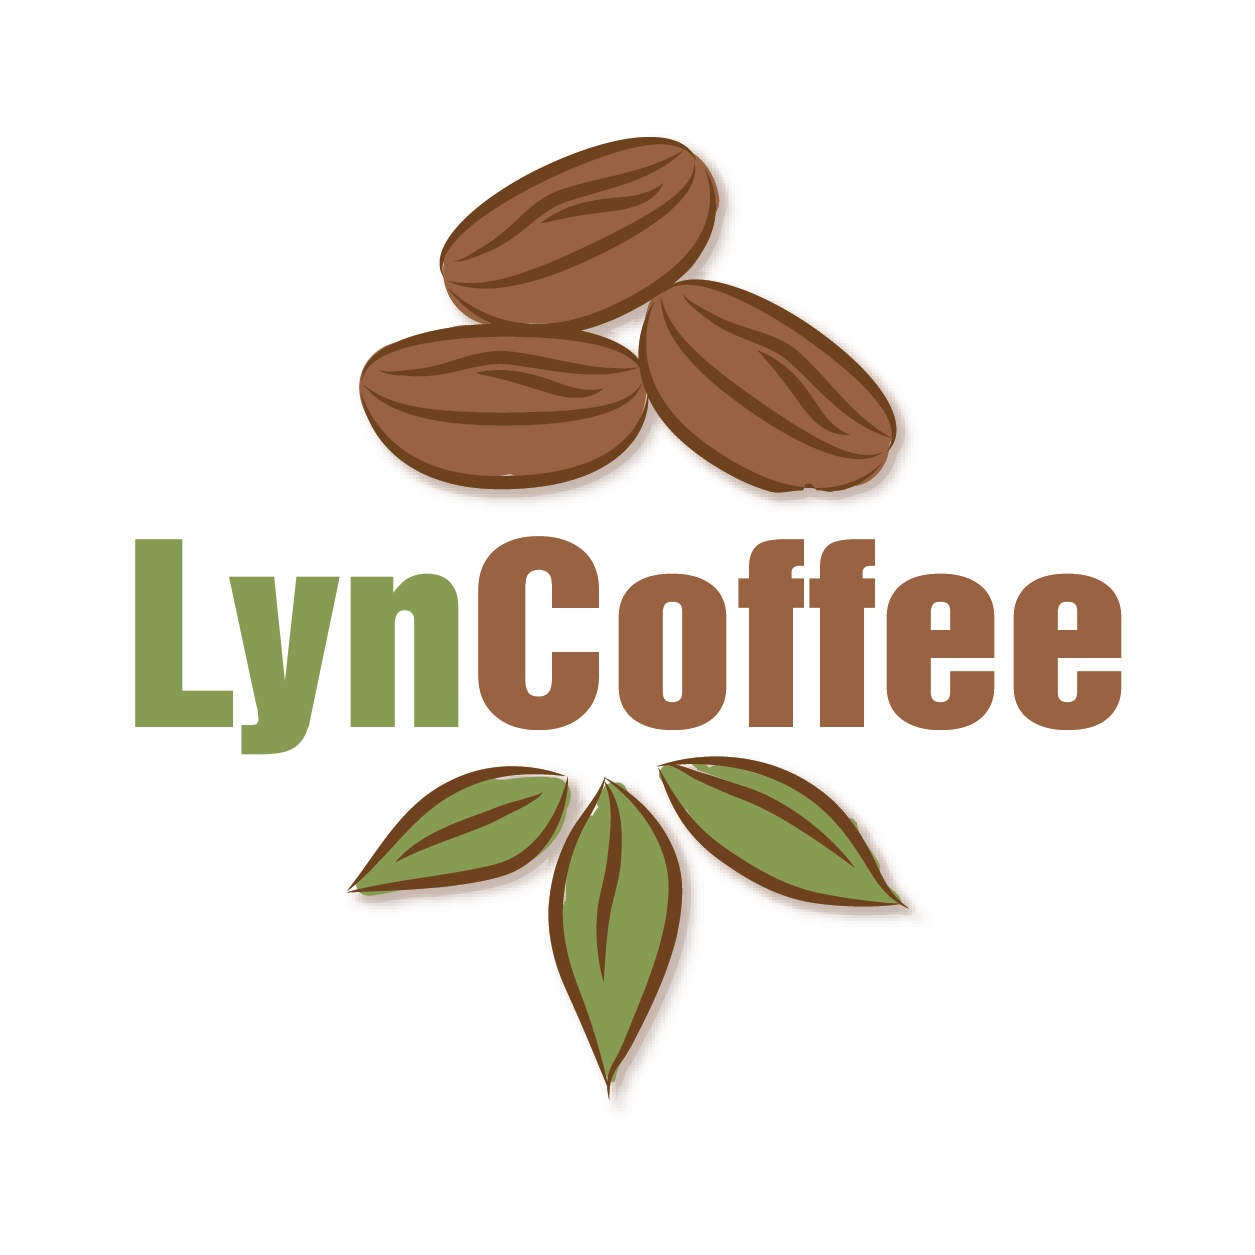 Hành trình khởi nghiệp của Anh Vũ Văn Tiến: Từ CEO công ty xuất nhập khẩu nông sản đến sáng lập viên thương hiệu cà phê Lyncoffee”